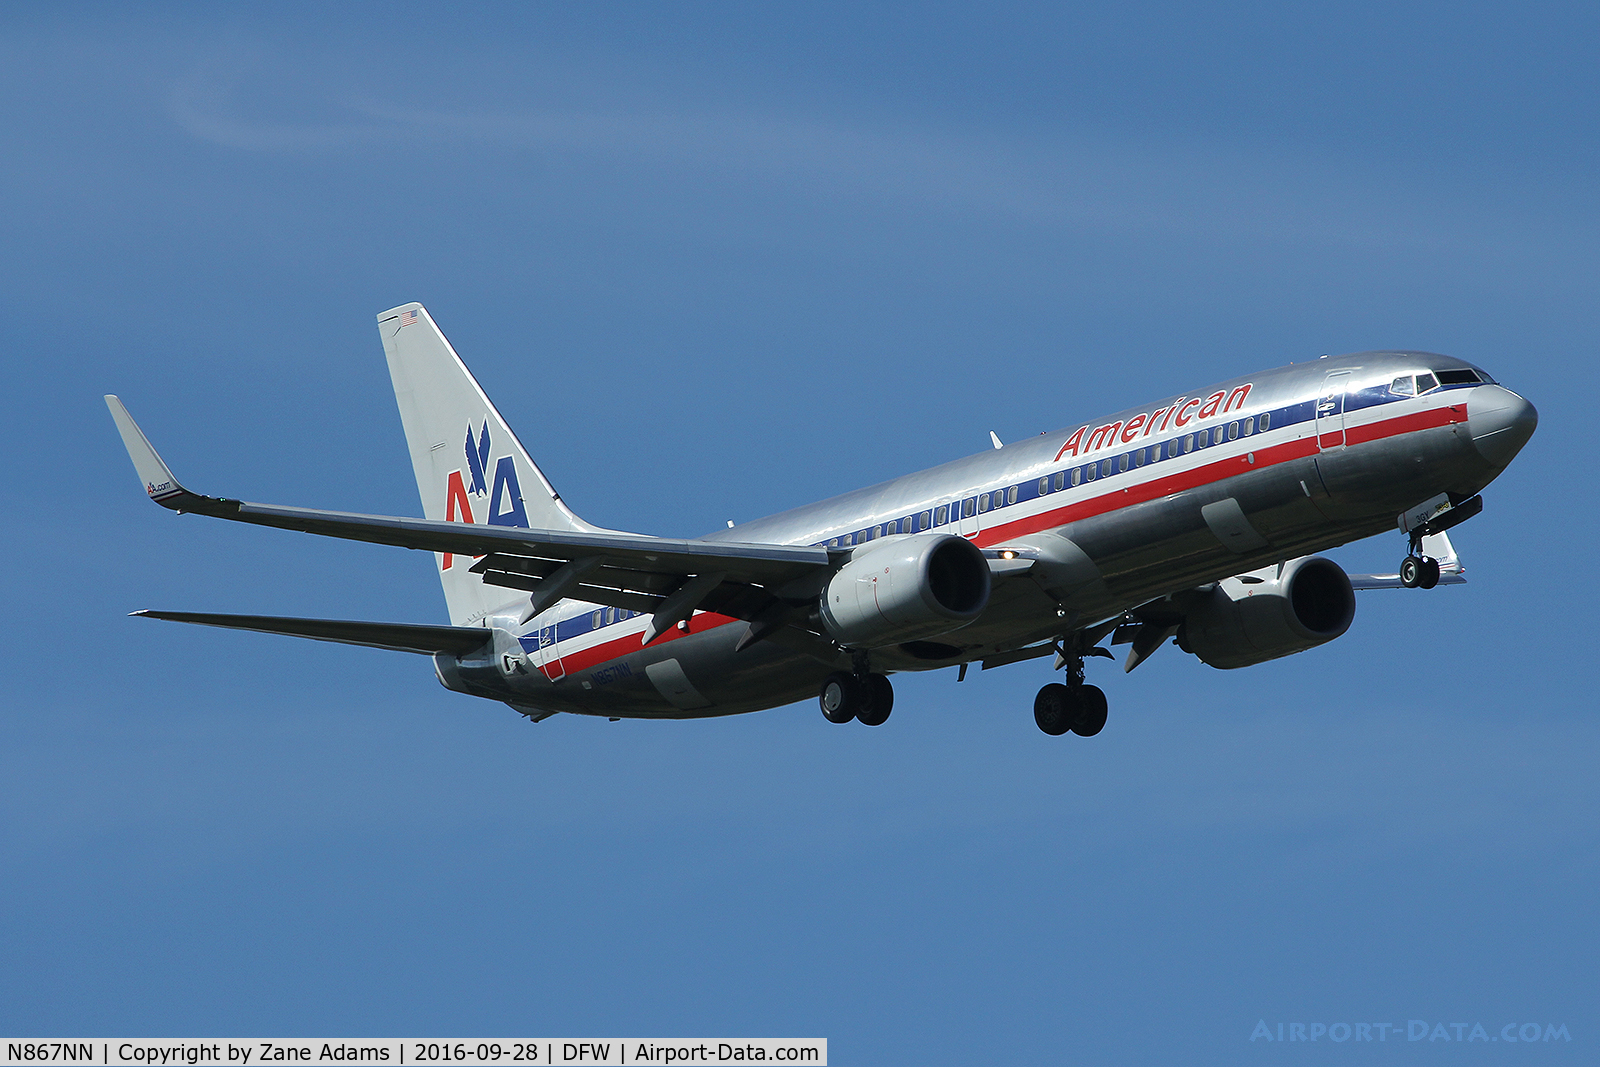 N867NN, 2011 Boeing 737-823 C/N 40762, Arriving at DFW Airport